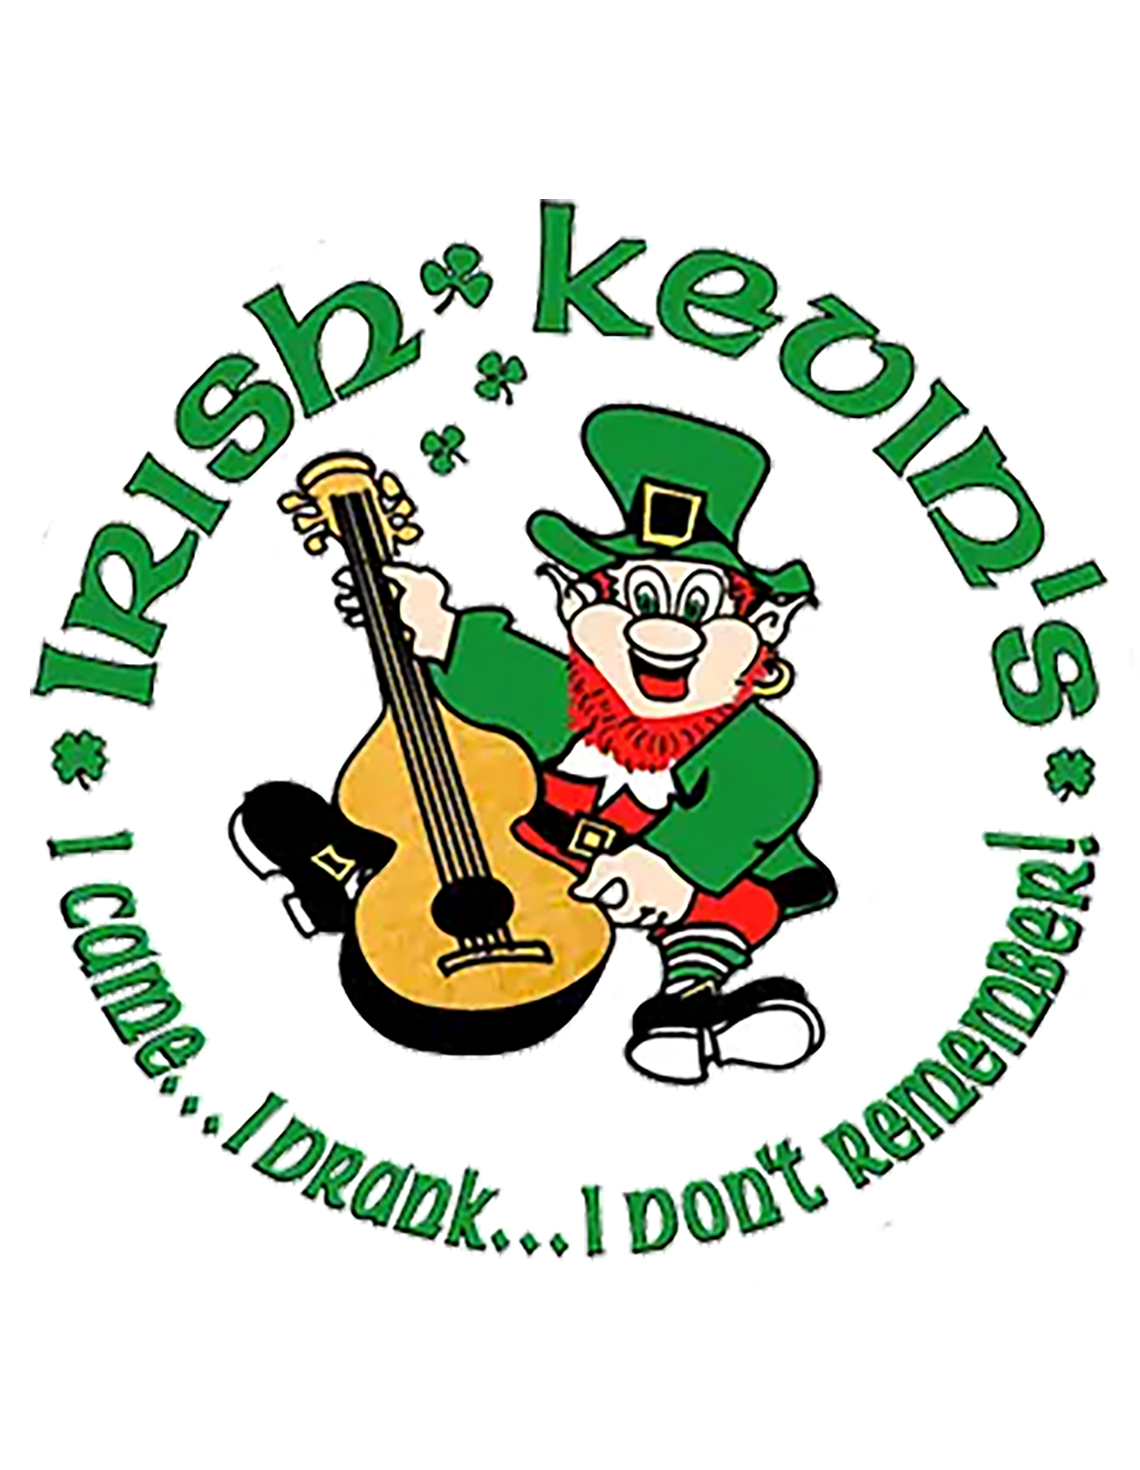 Irish Kevin's logo